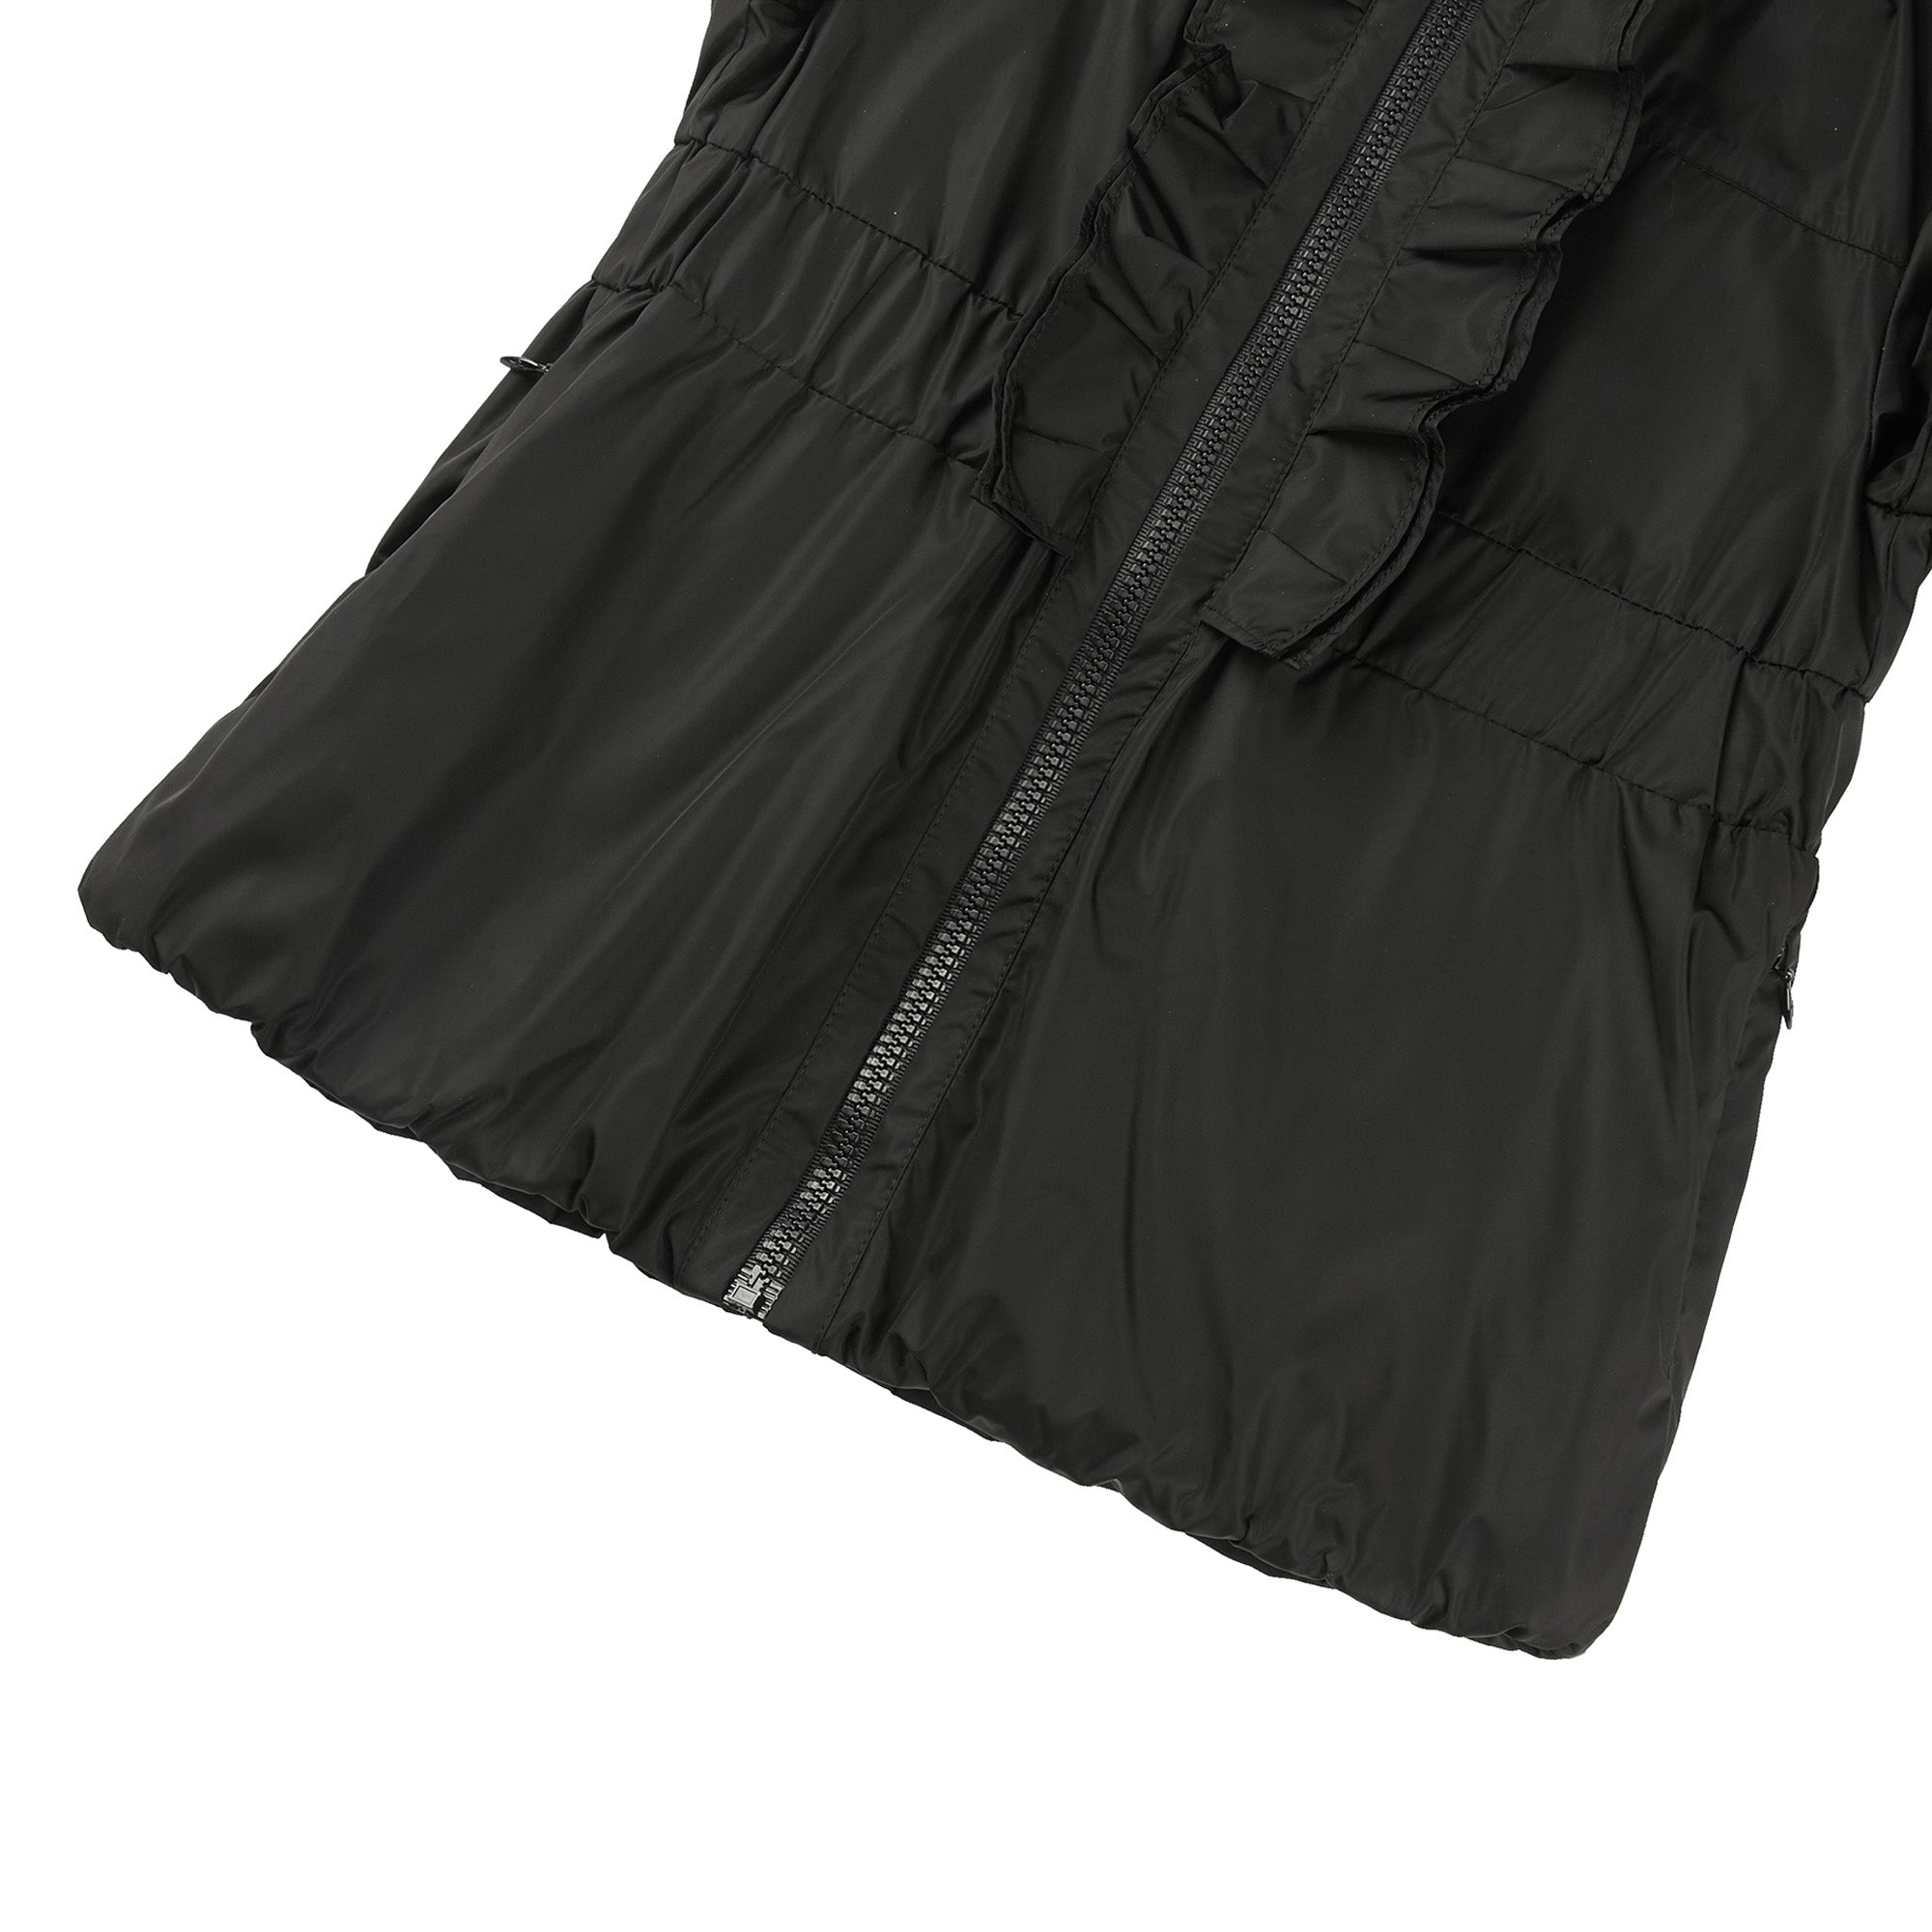 Girls Black Ruffle Jacket